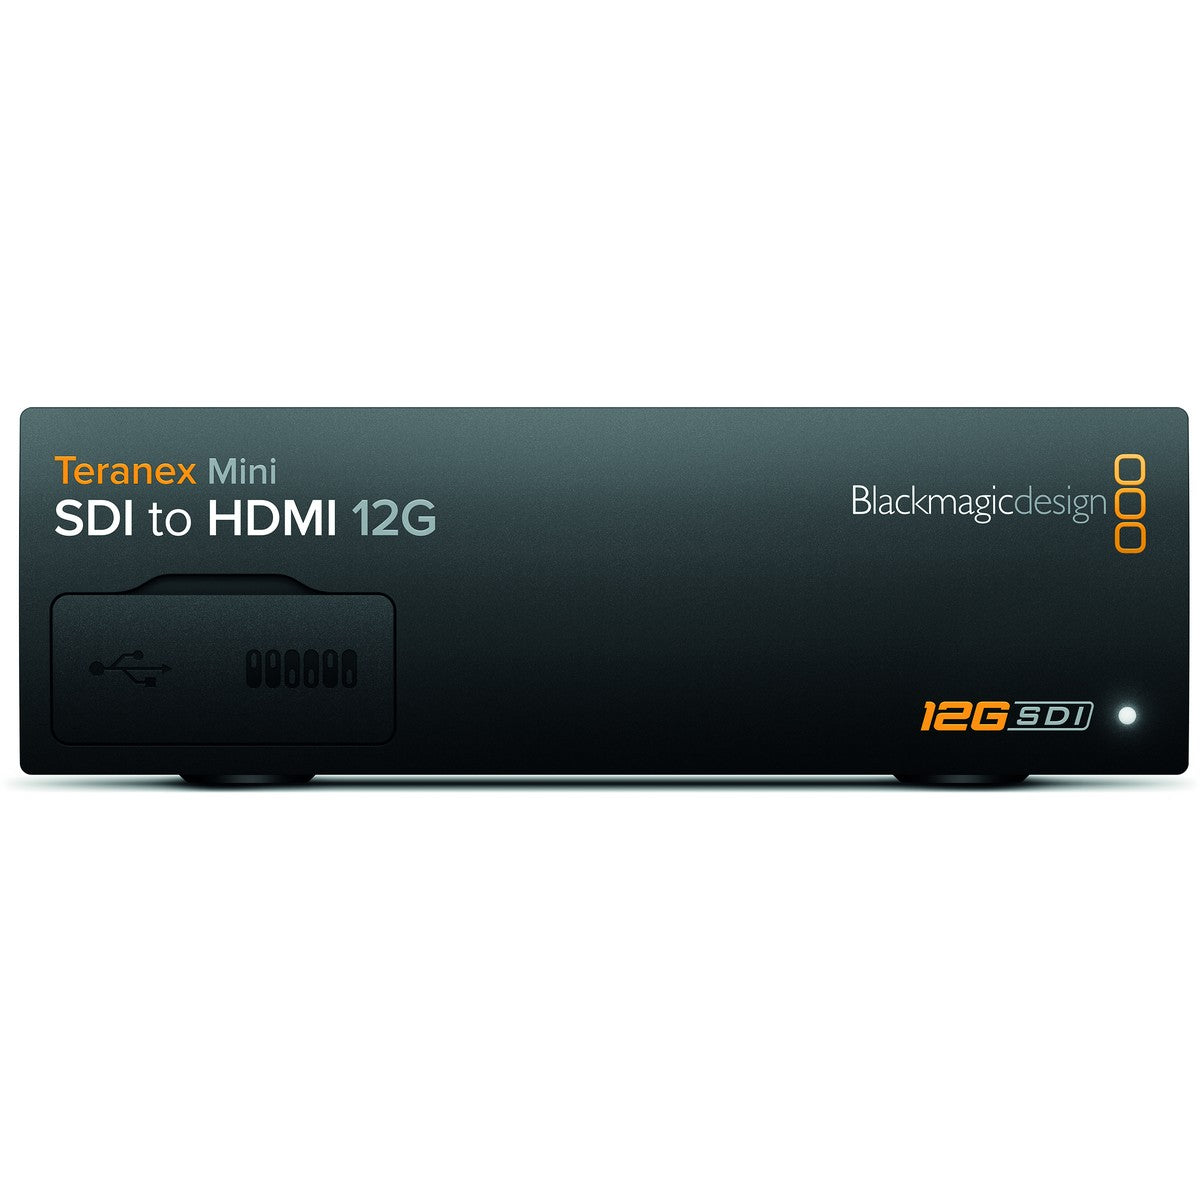 Blackmagic Design Teranex Mini SDI to HDMi 12G SD HD Ultra HD Supported Converter (Used)